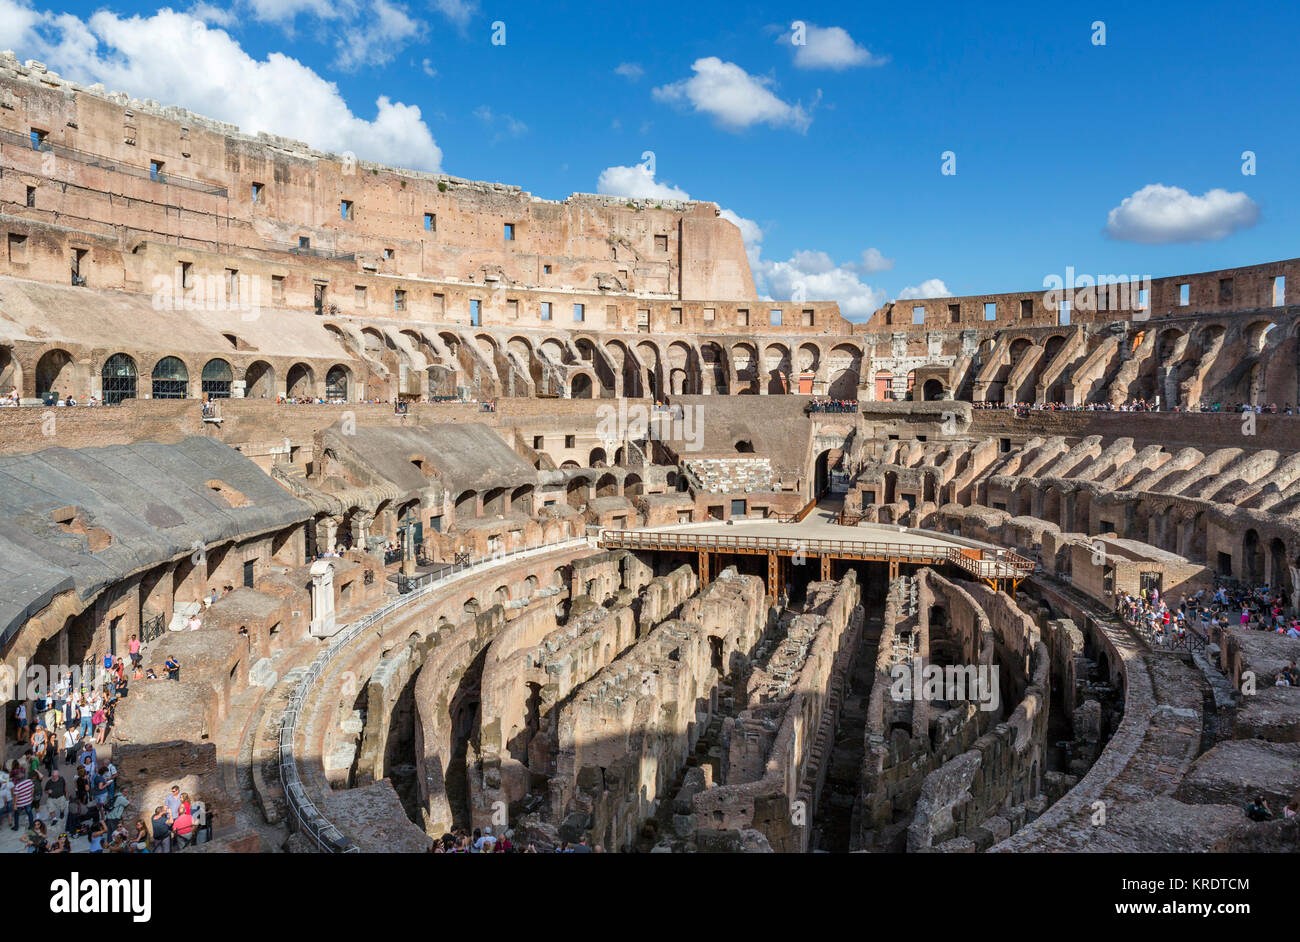 L'intérieur du Colisée romain, Rome, Italie Banque D'Images